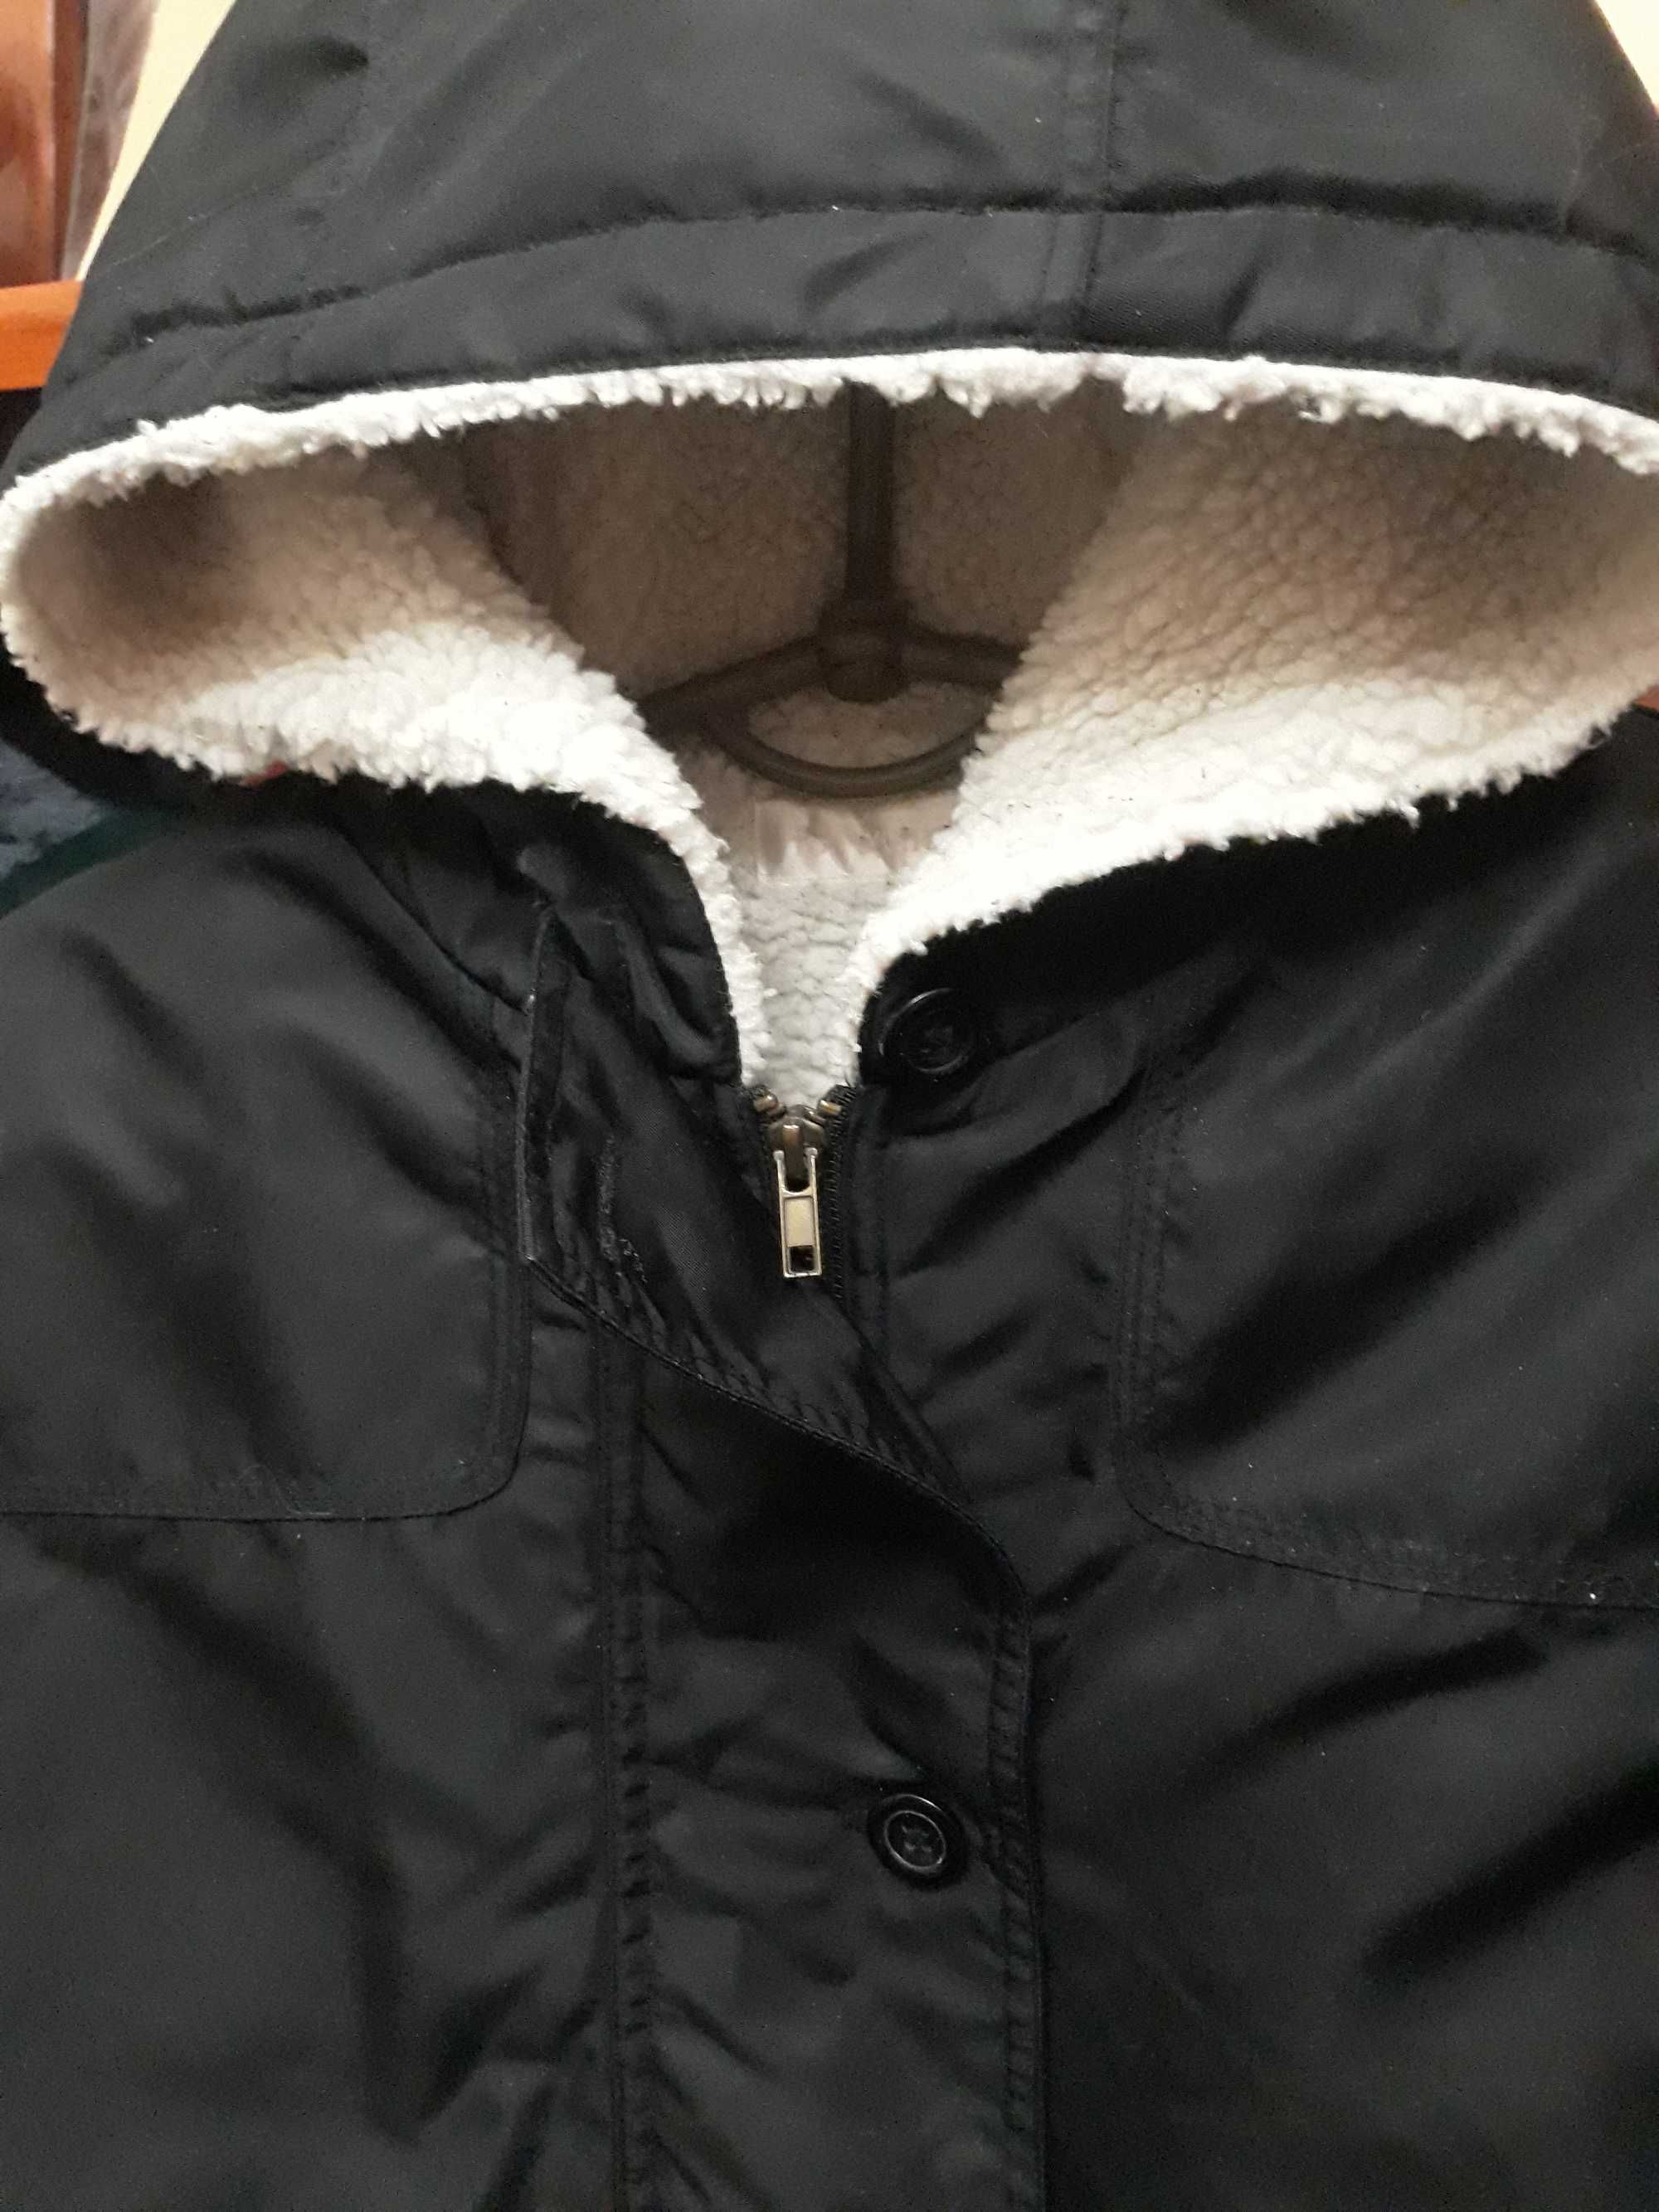 Курточка женская черная не промокаемая размер UK12/EUR38